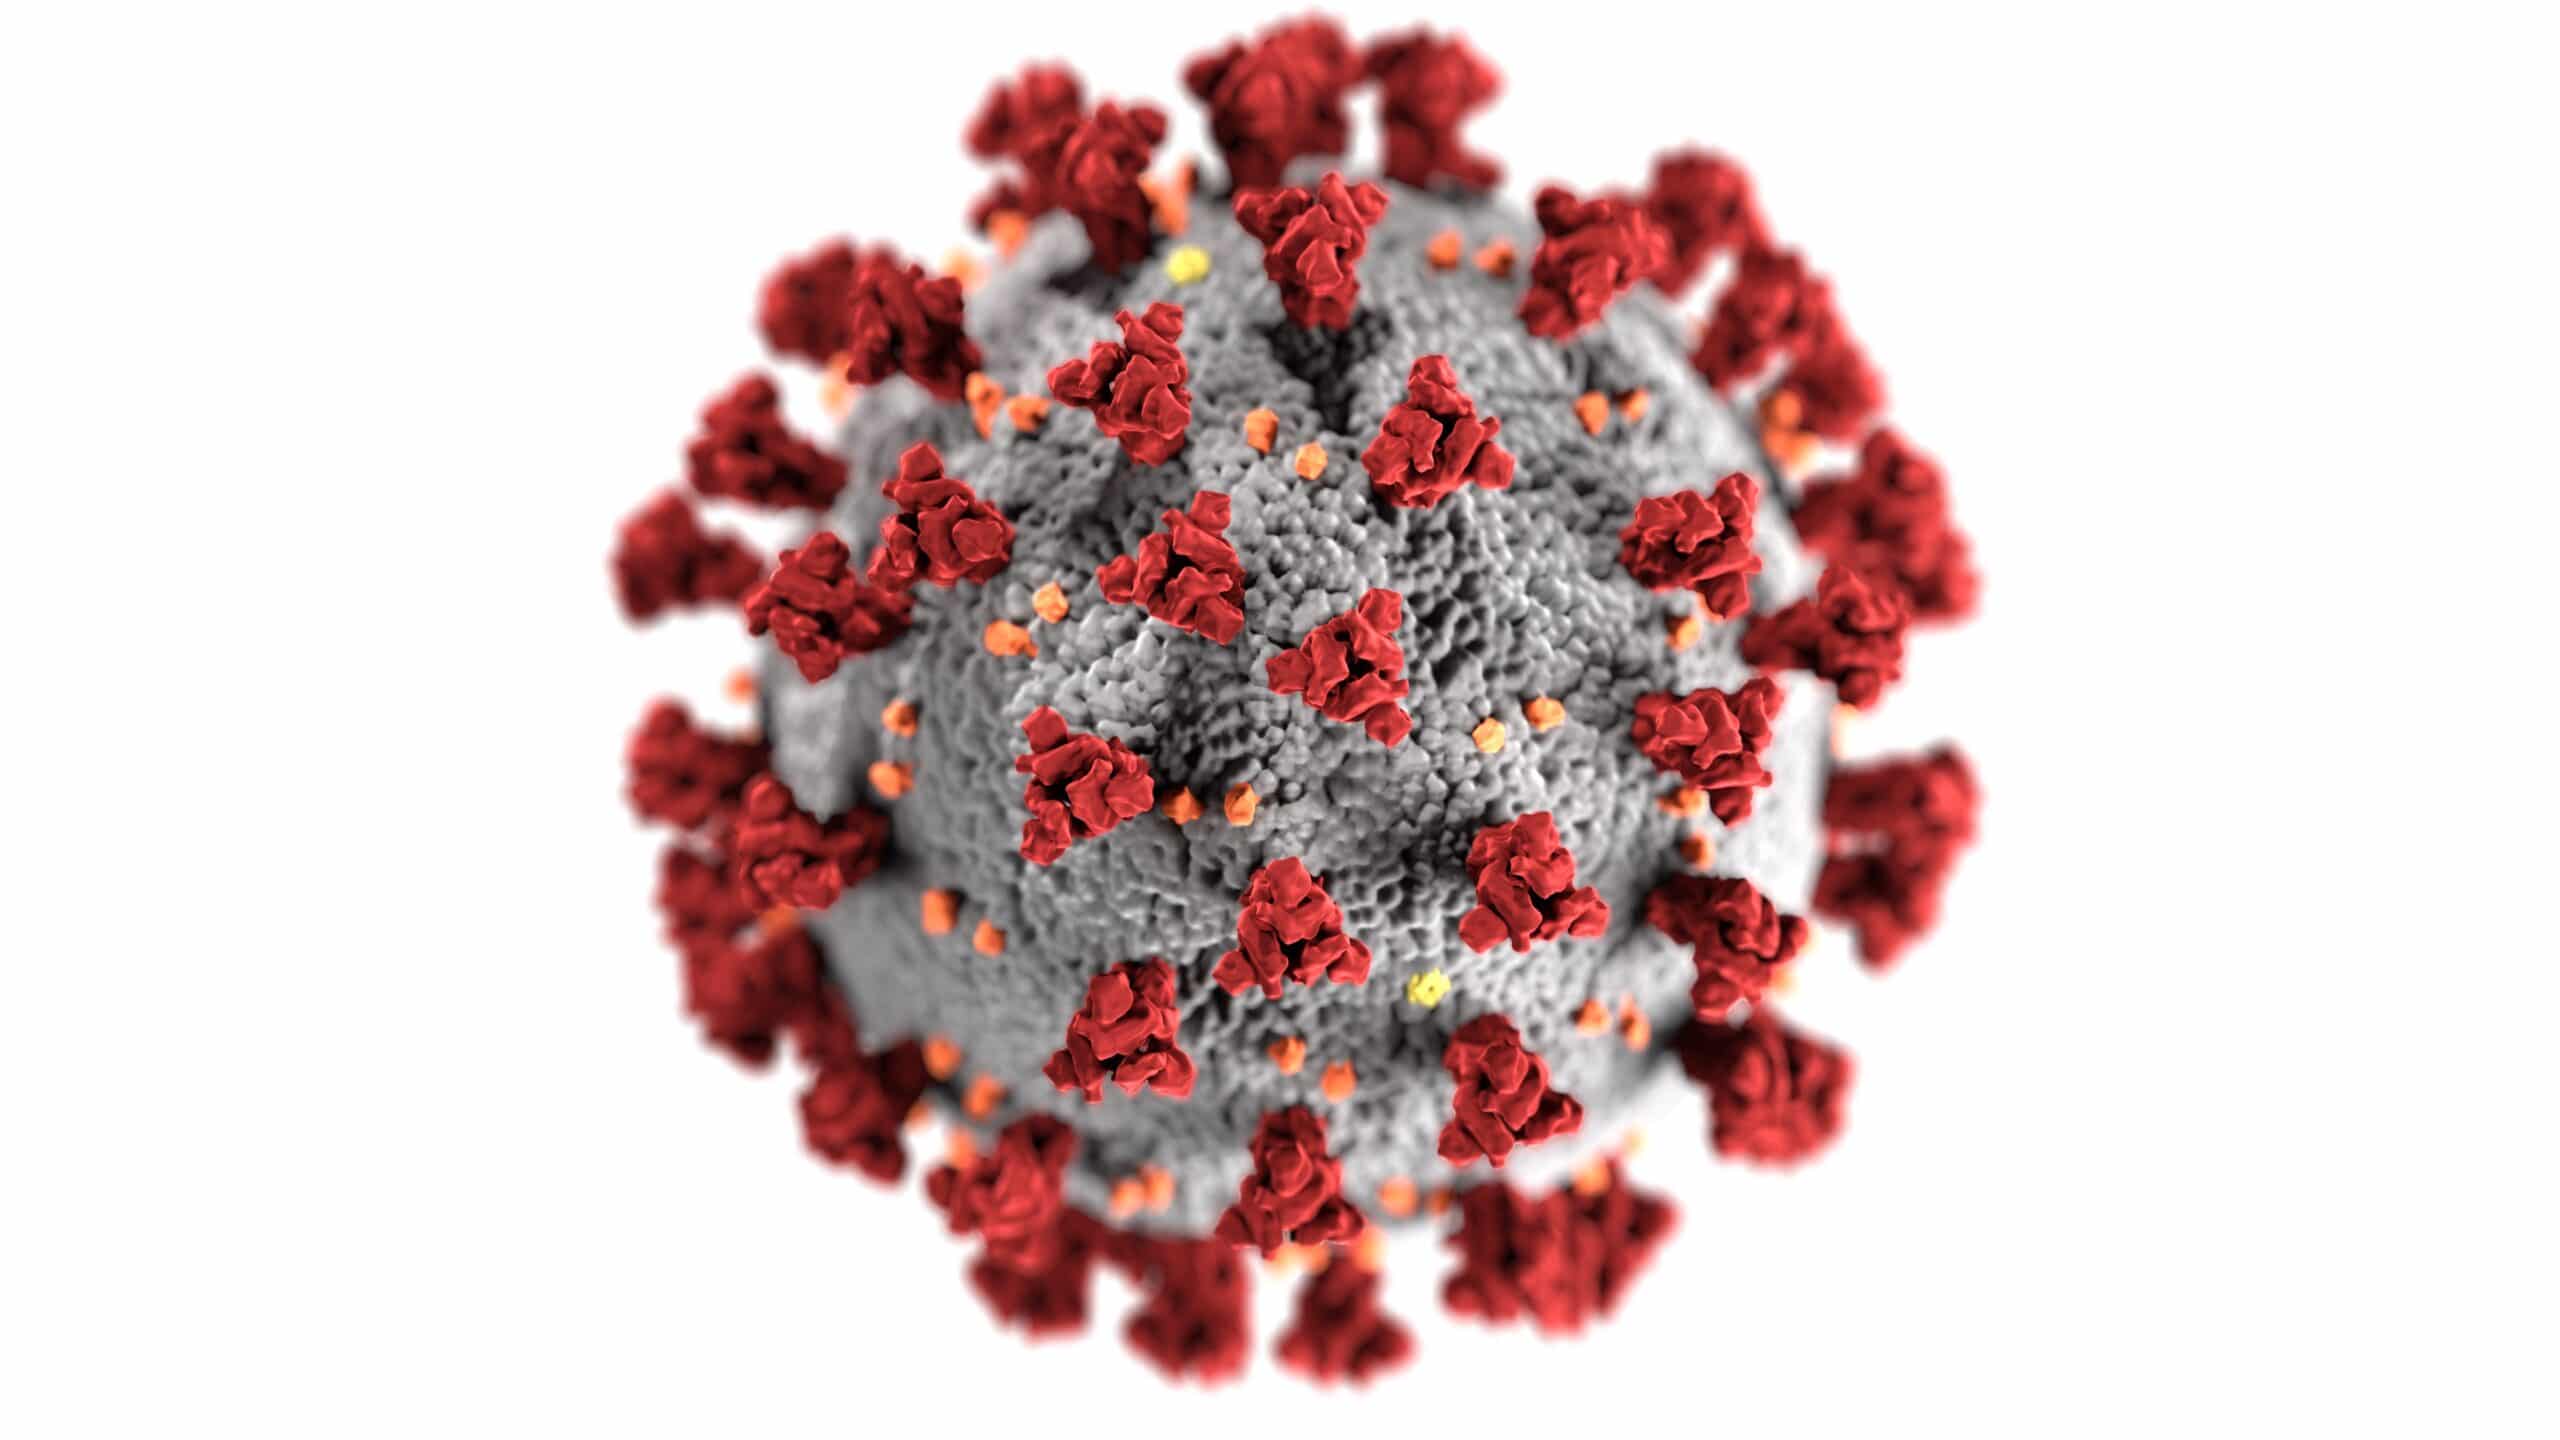 CDC image of the coronavirus